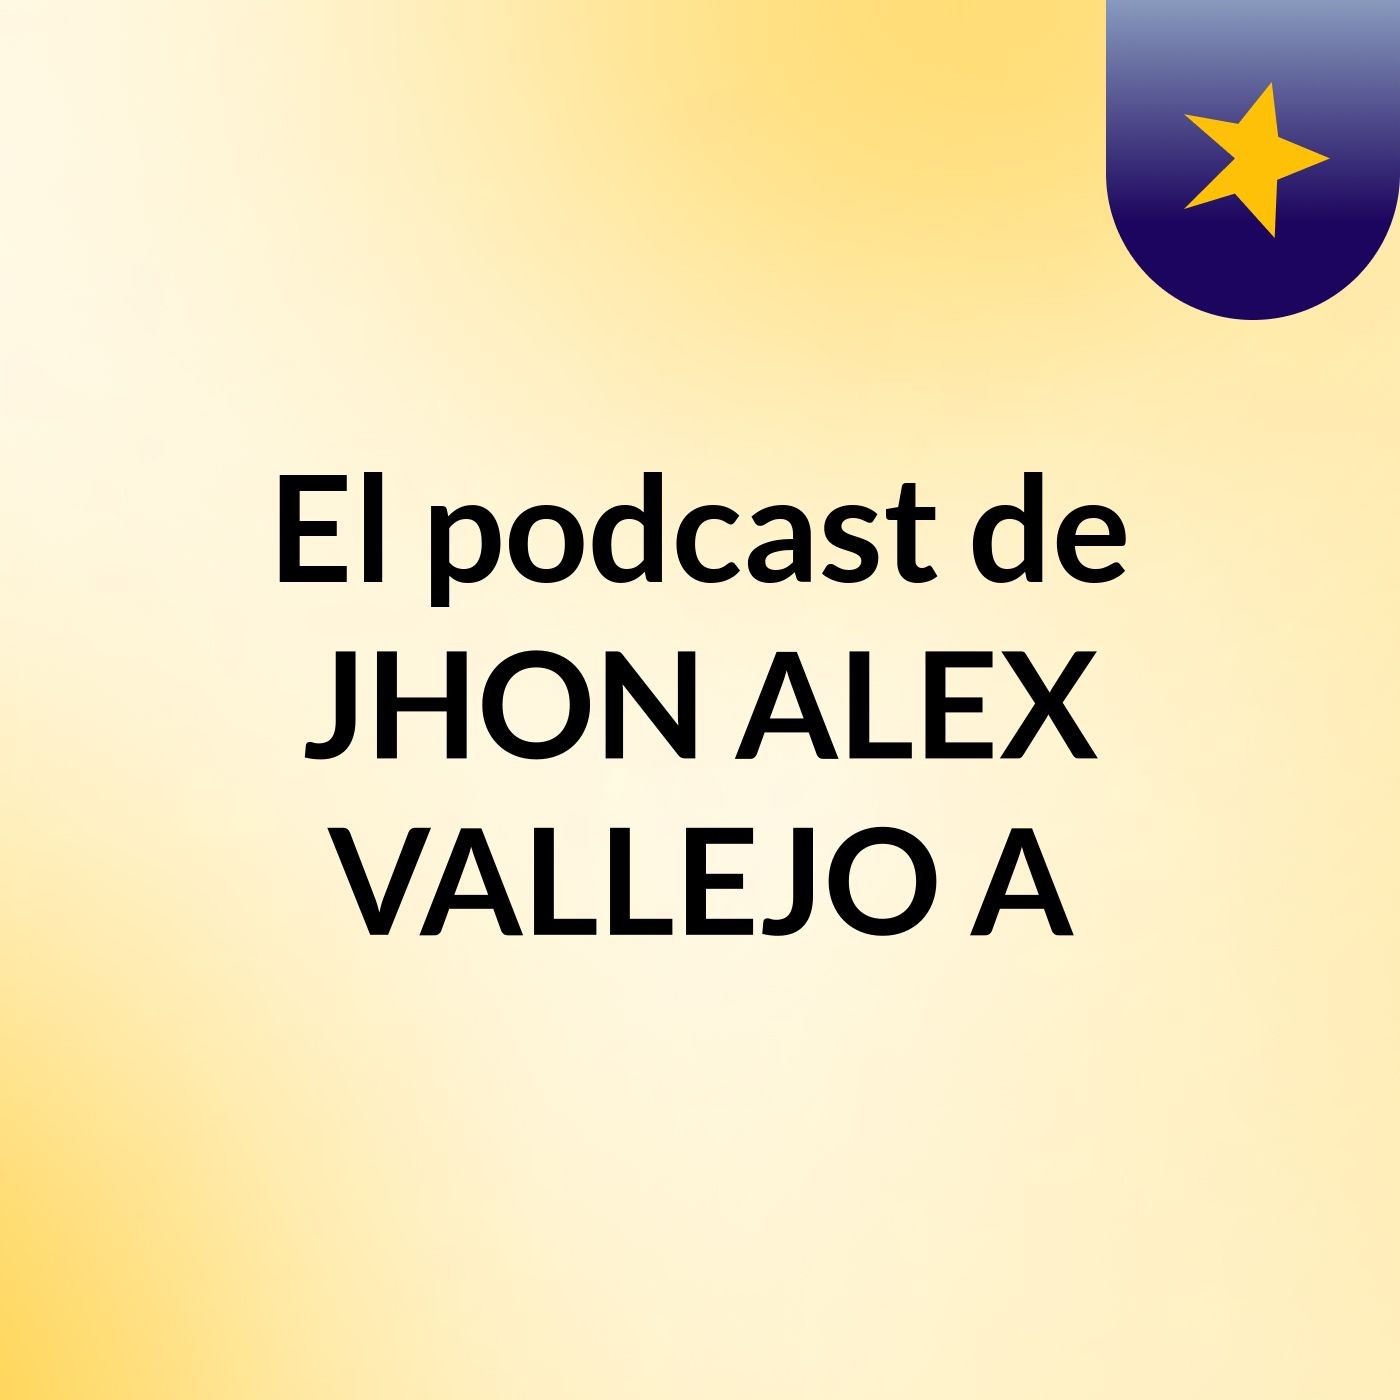 El podcast de JHON ALEX VALLEJO A